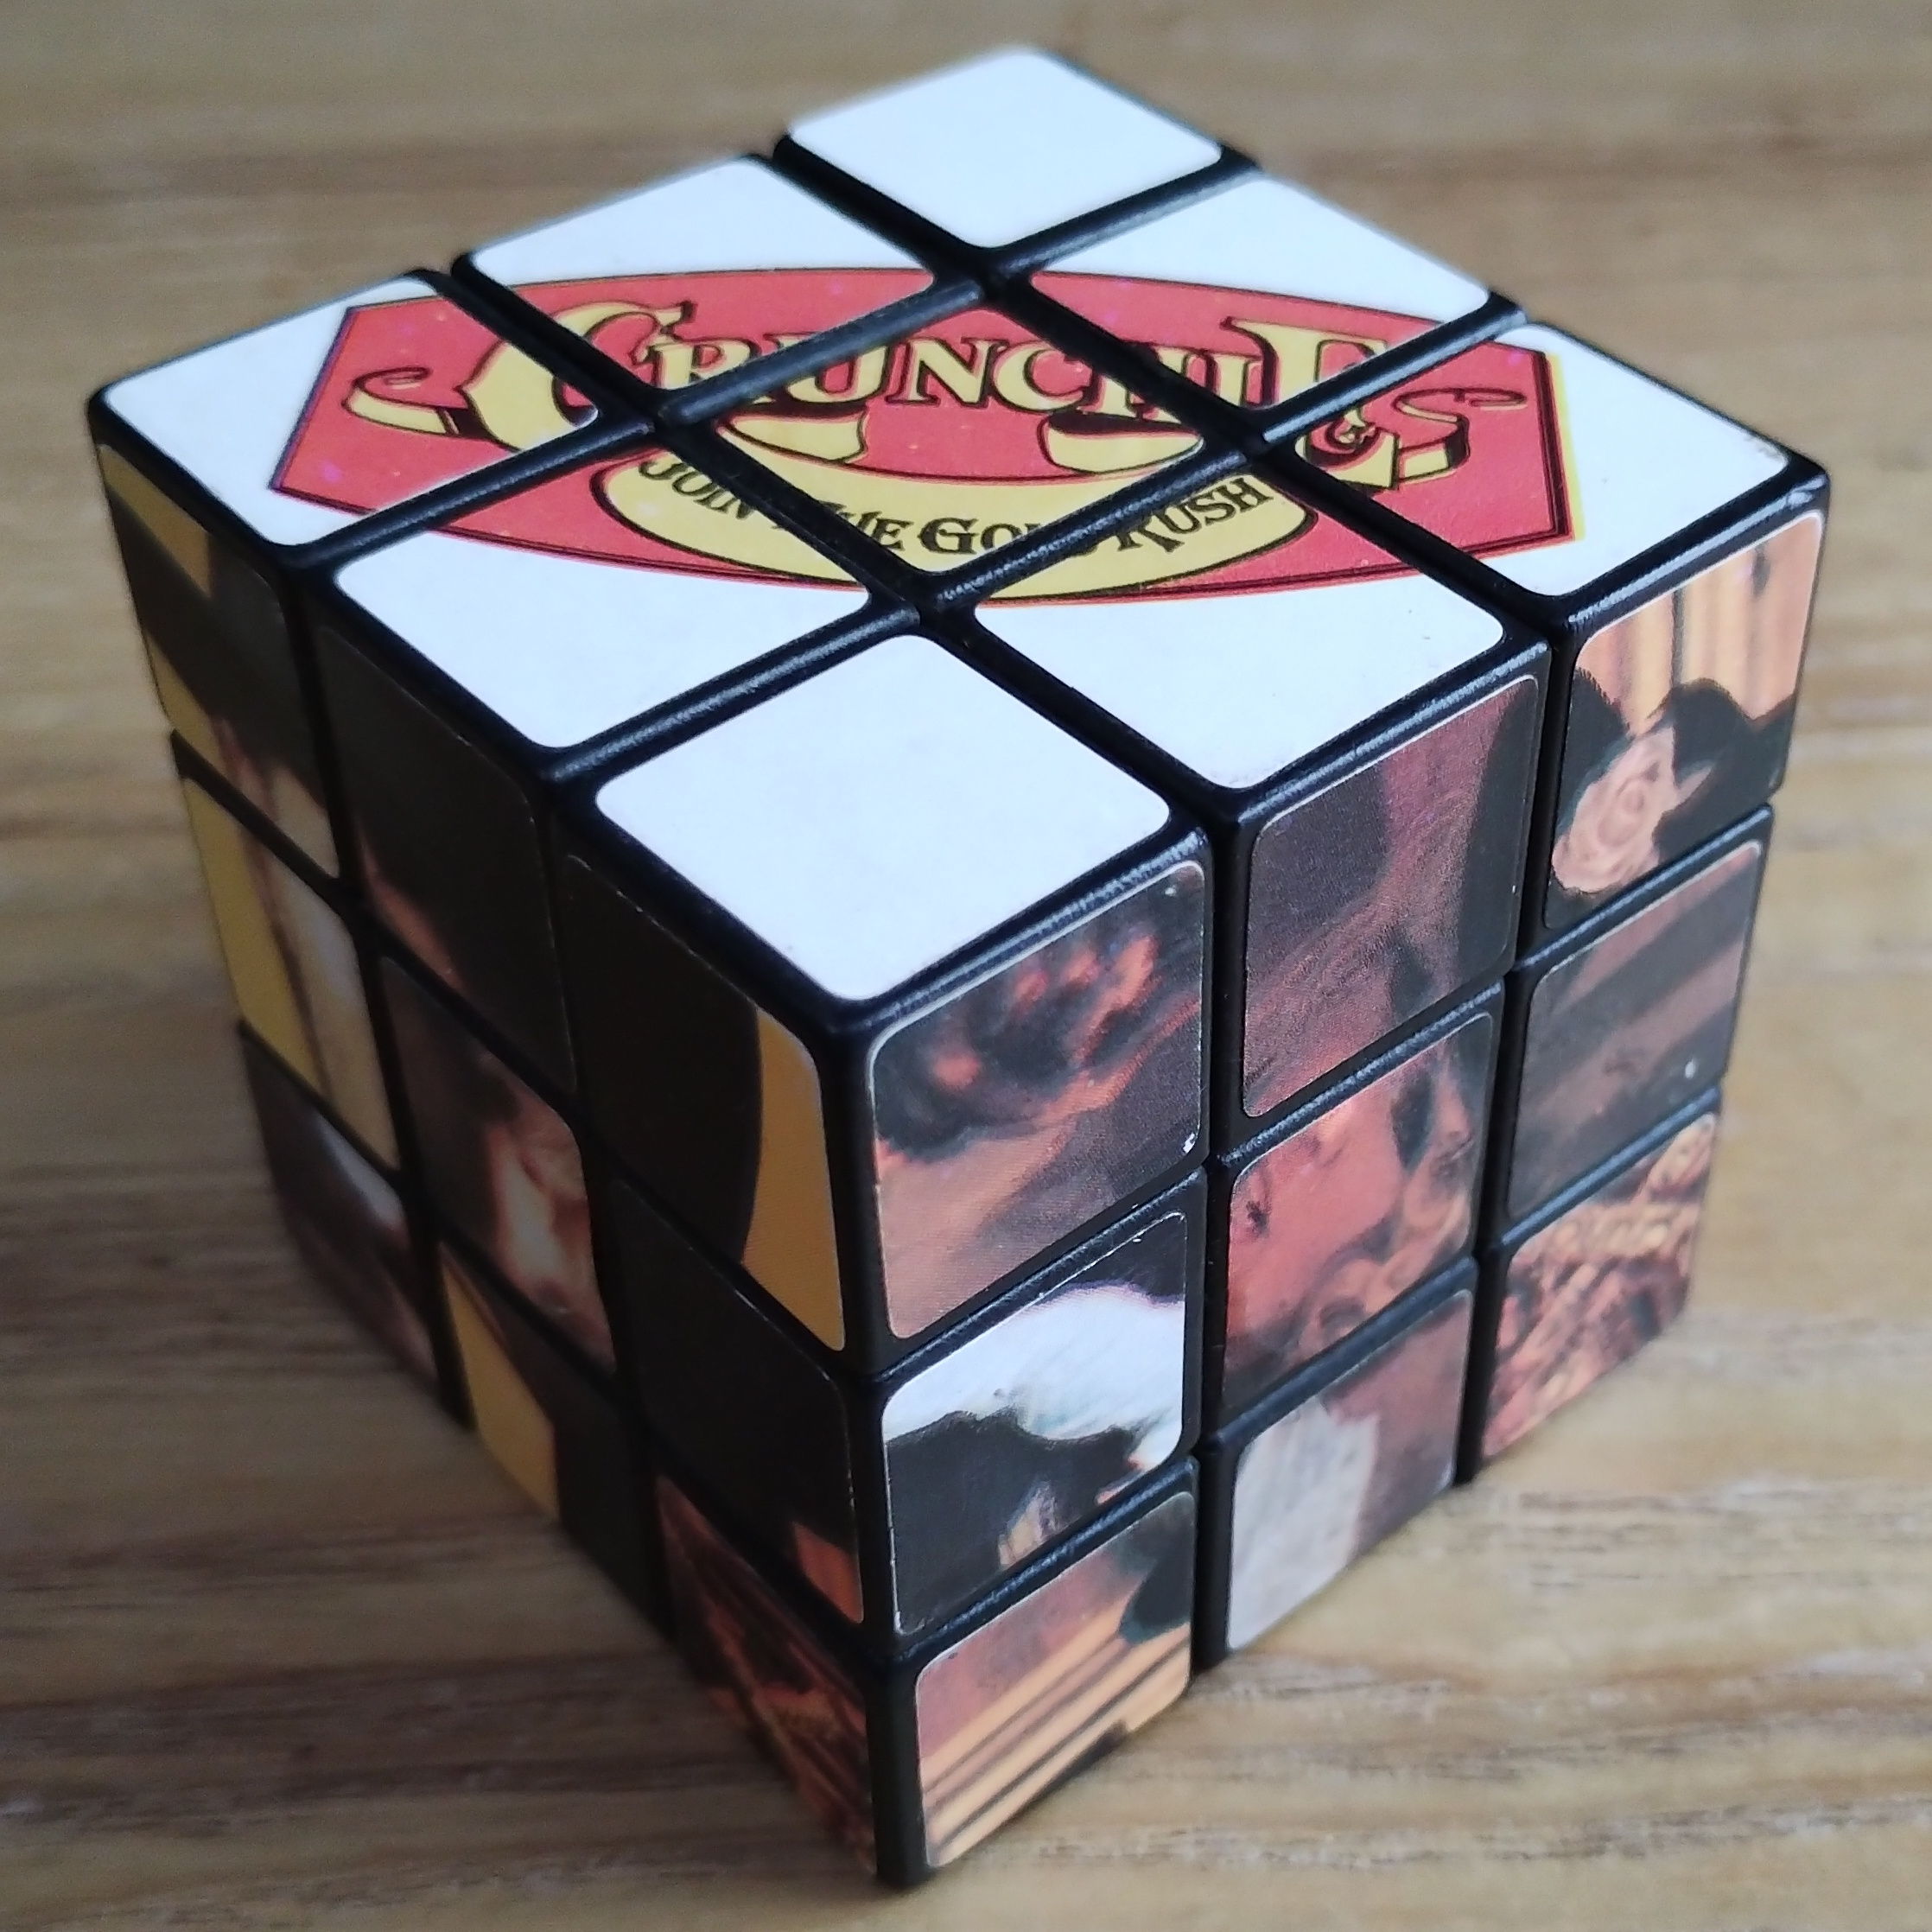 Crunchie rubix cube